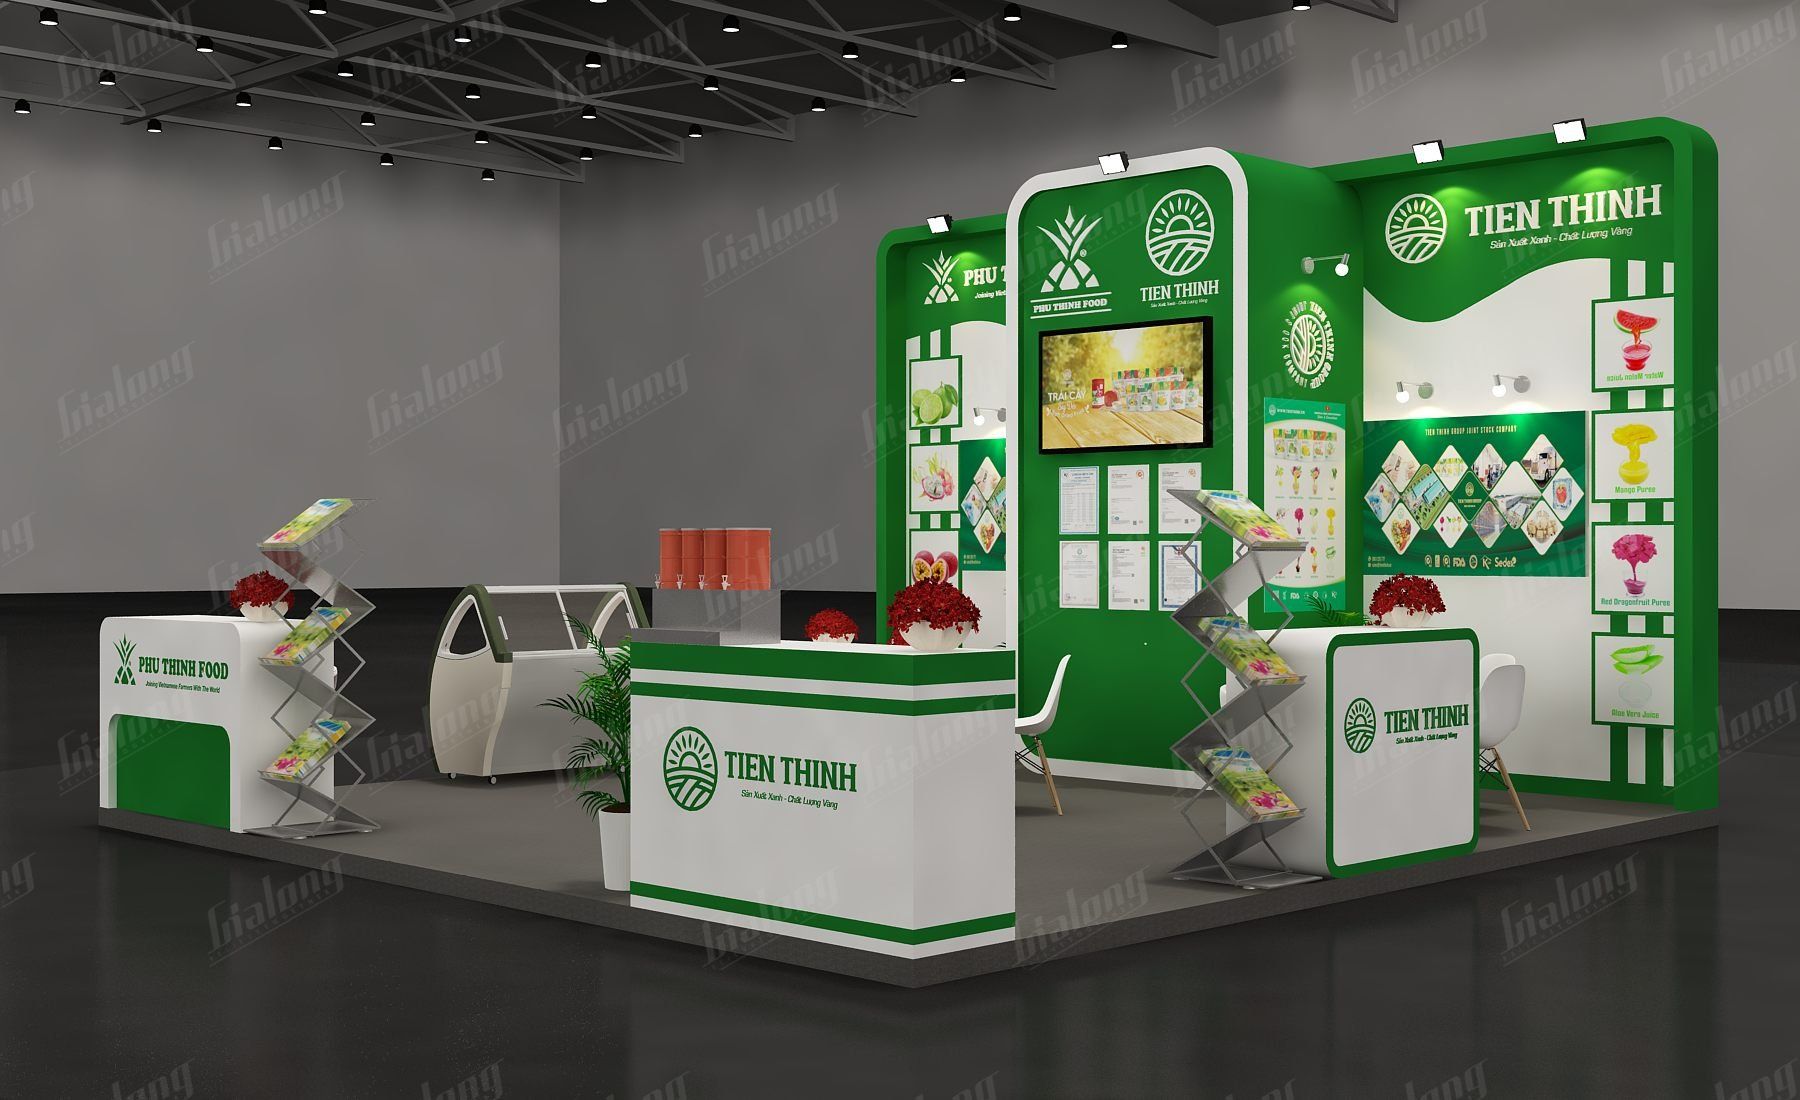 Exhibition booth design - Gia Long
